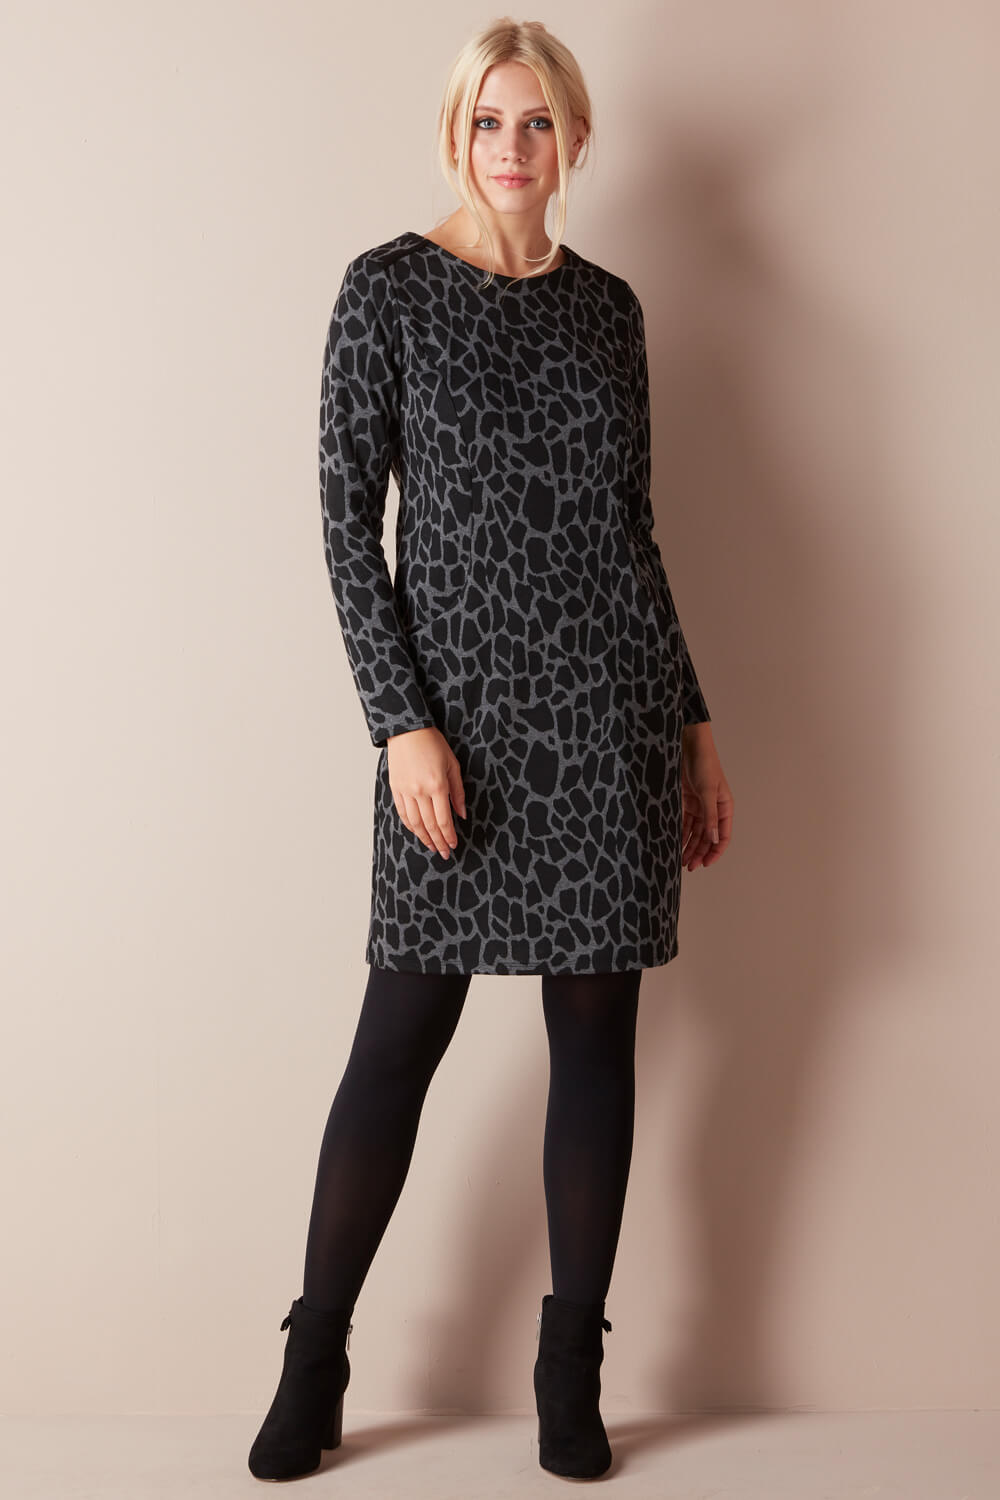 roman leopard print dress